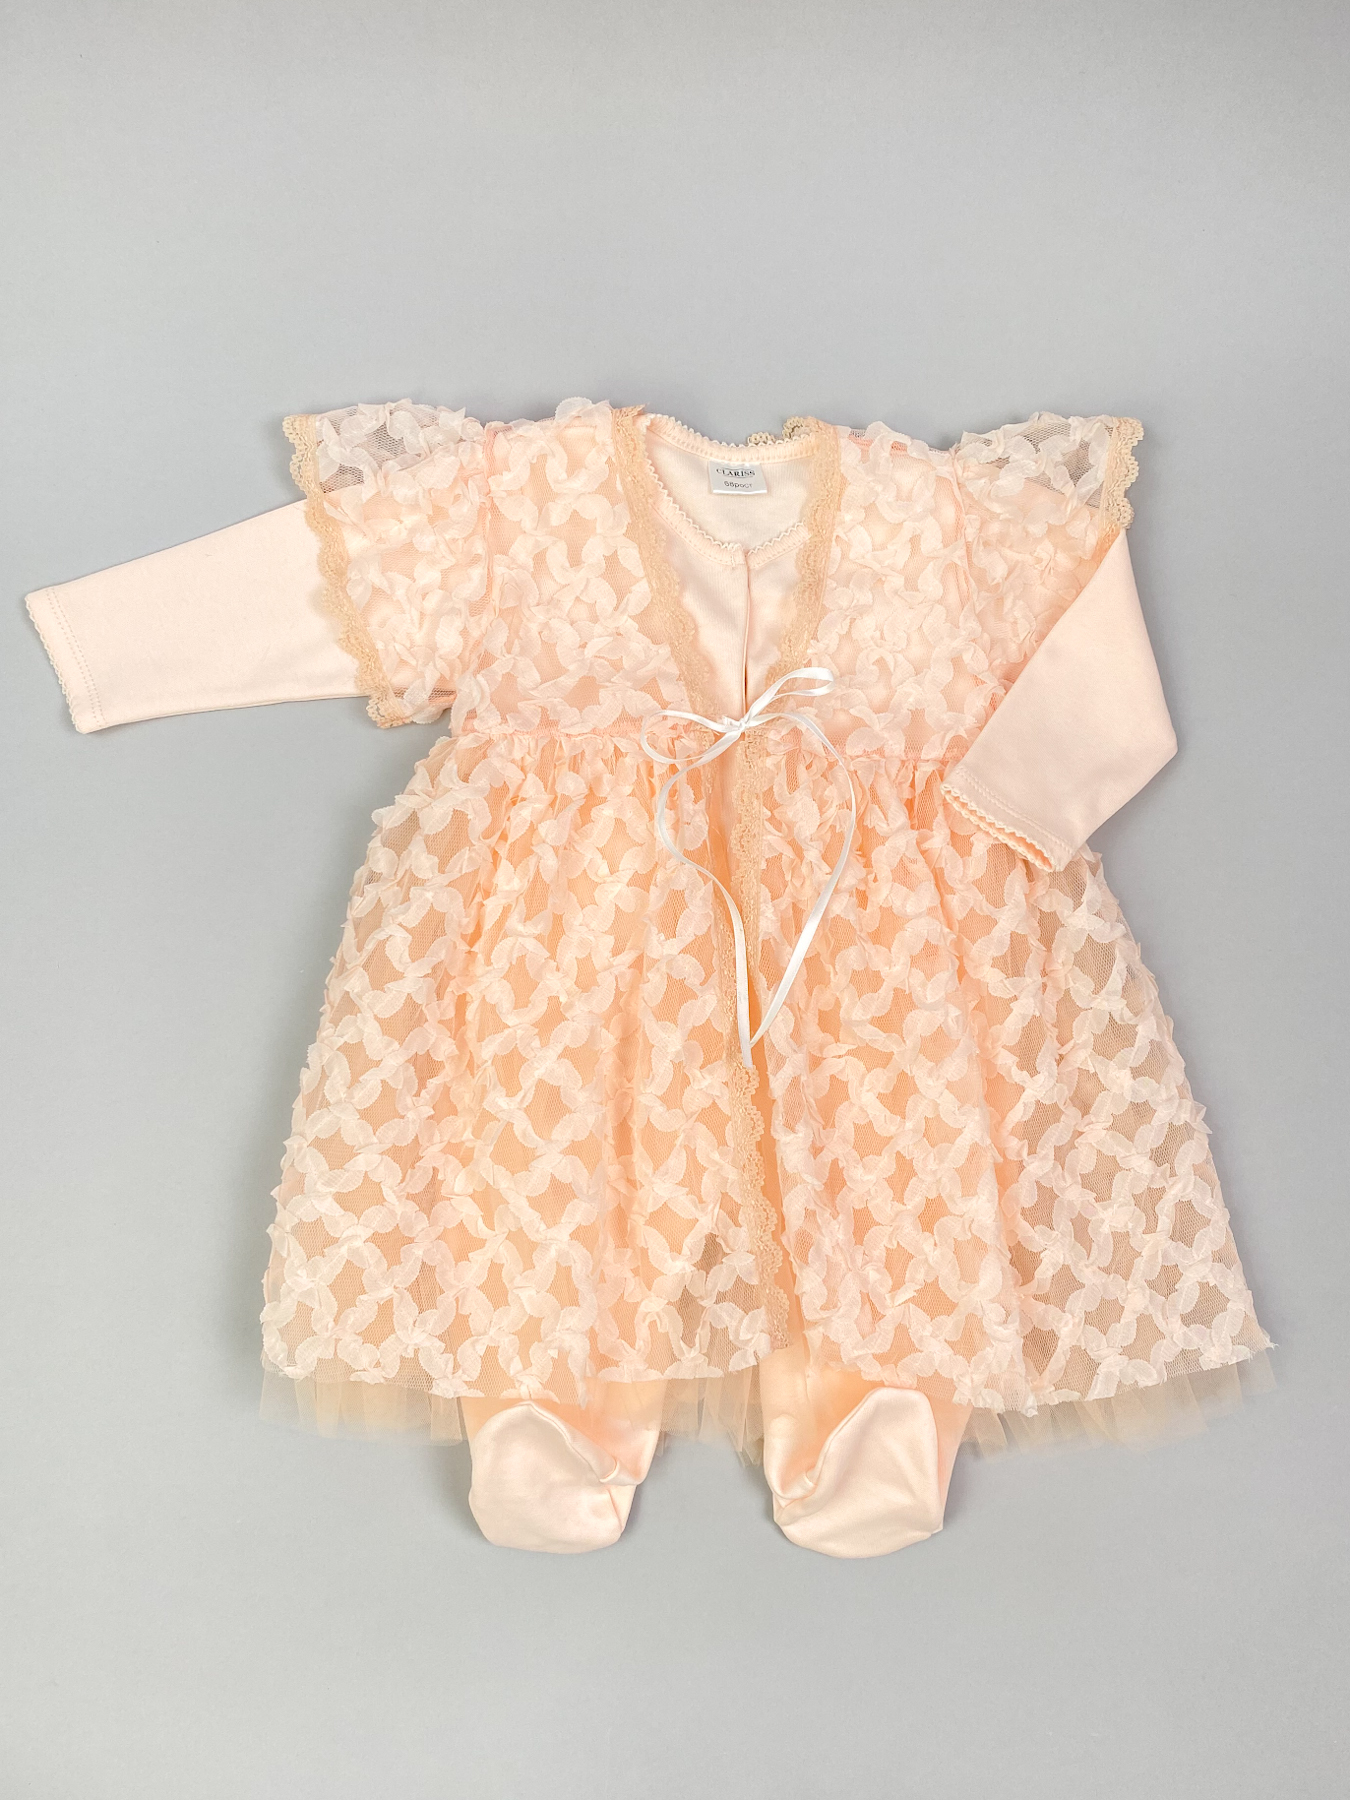 Комплект одежды детский  Clariss Ажурная клетка, оранжевый, 80